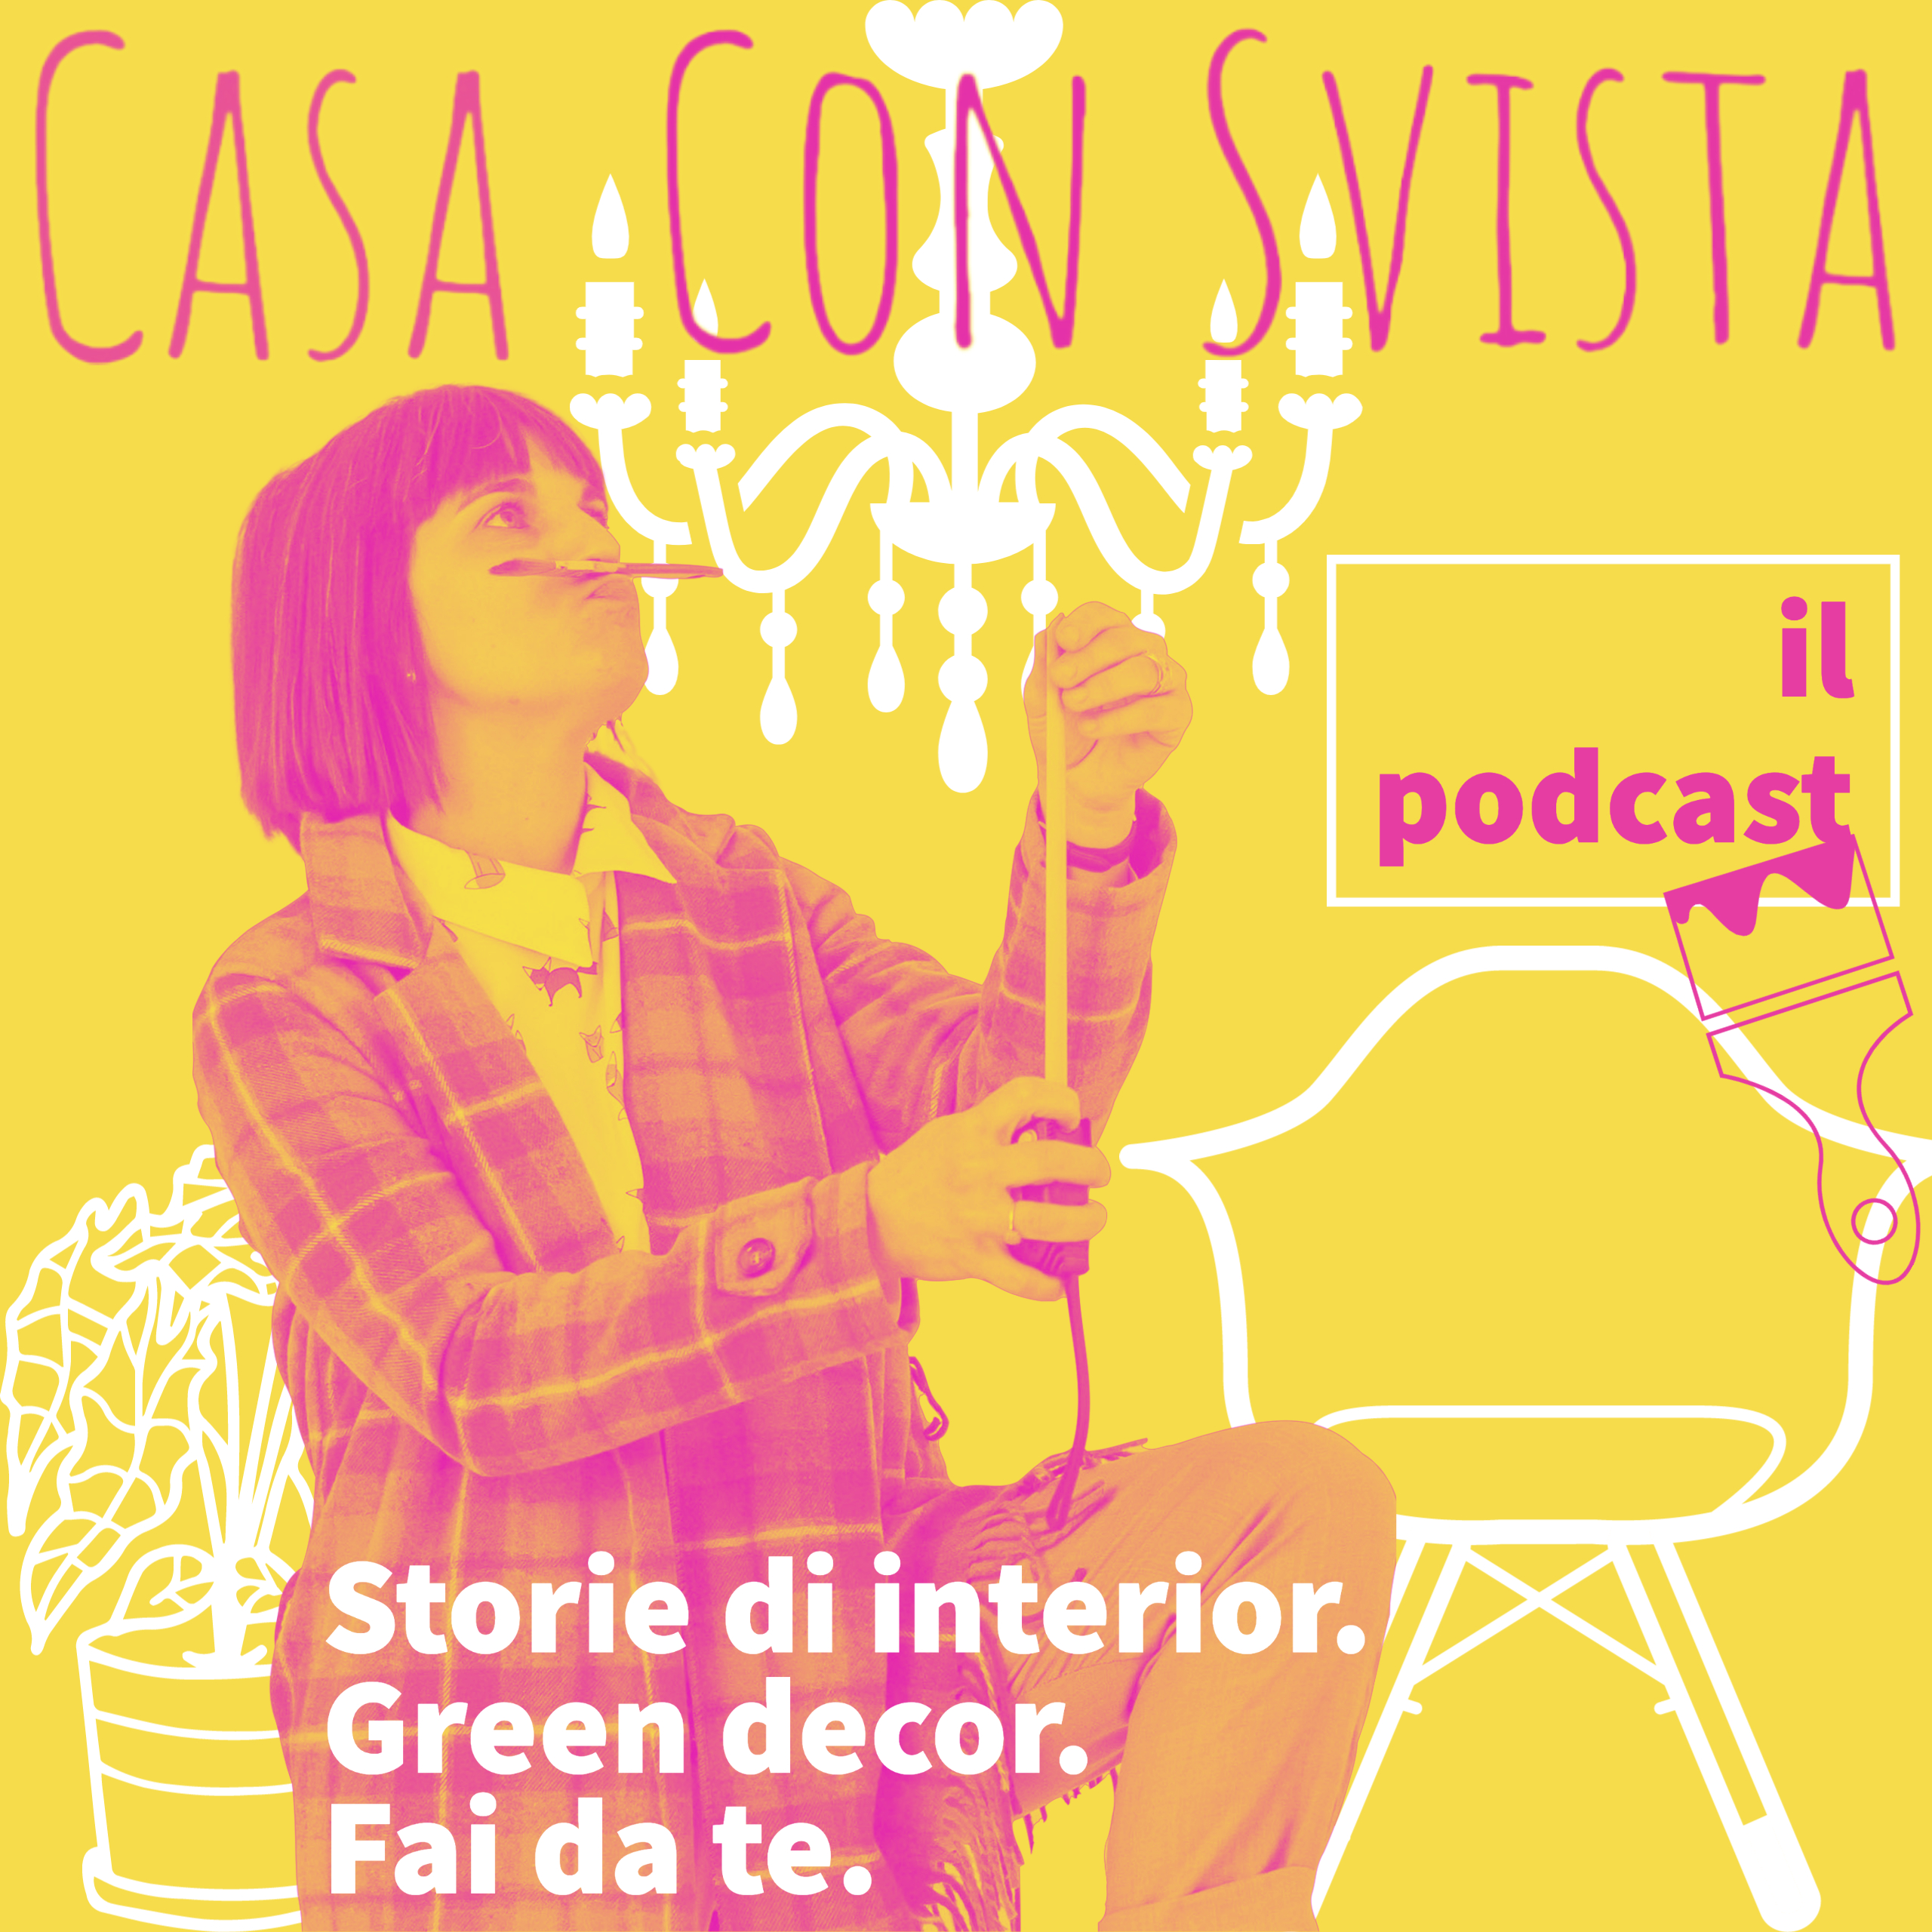 La copertina del podcast di "Casa con Svista"